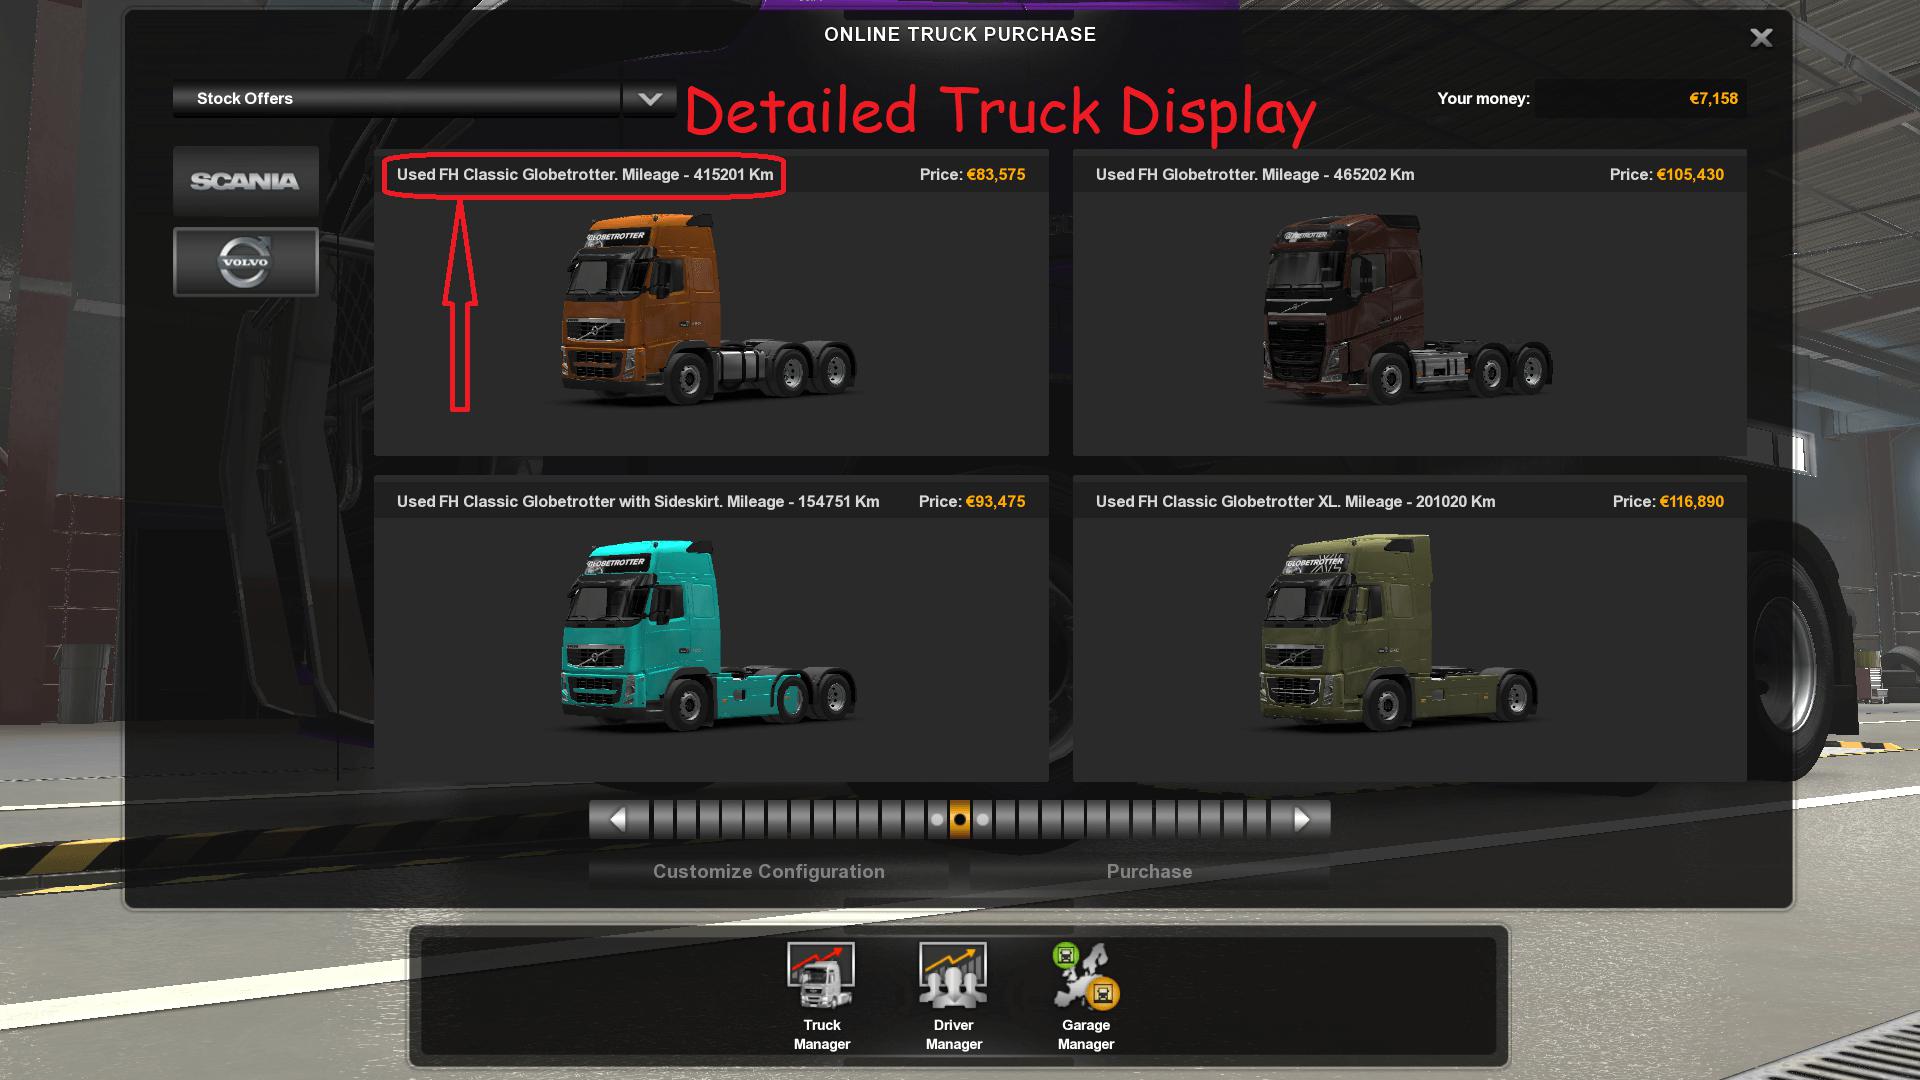 euro truck simulator 3 apk download